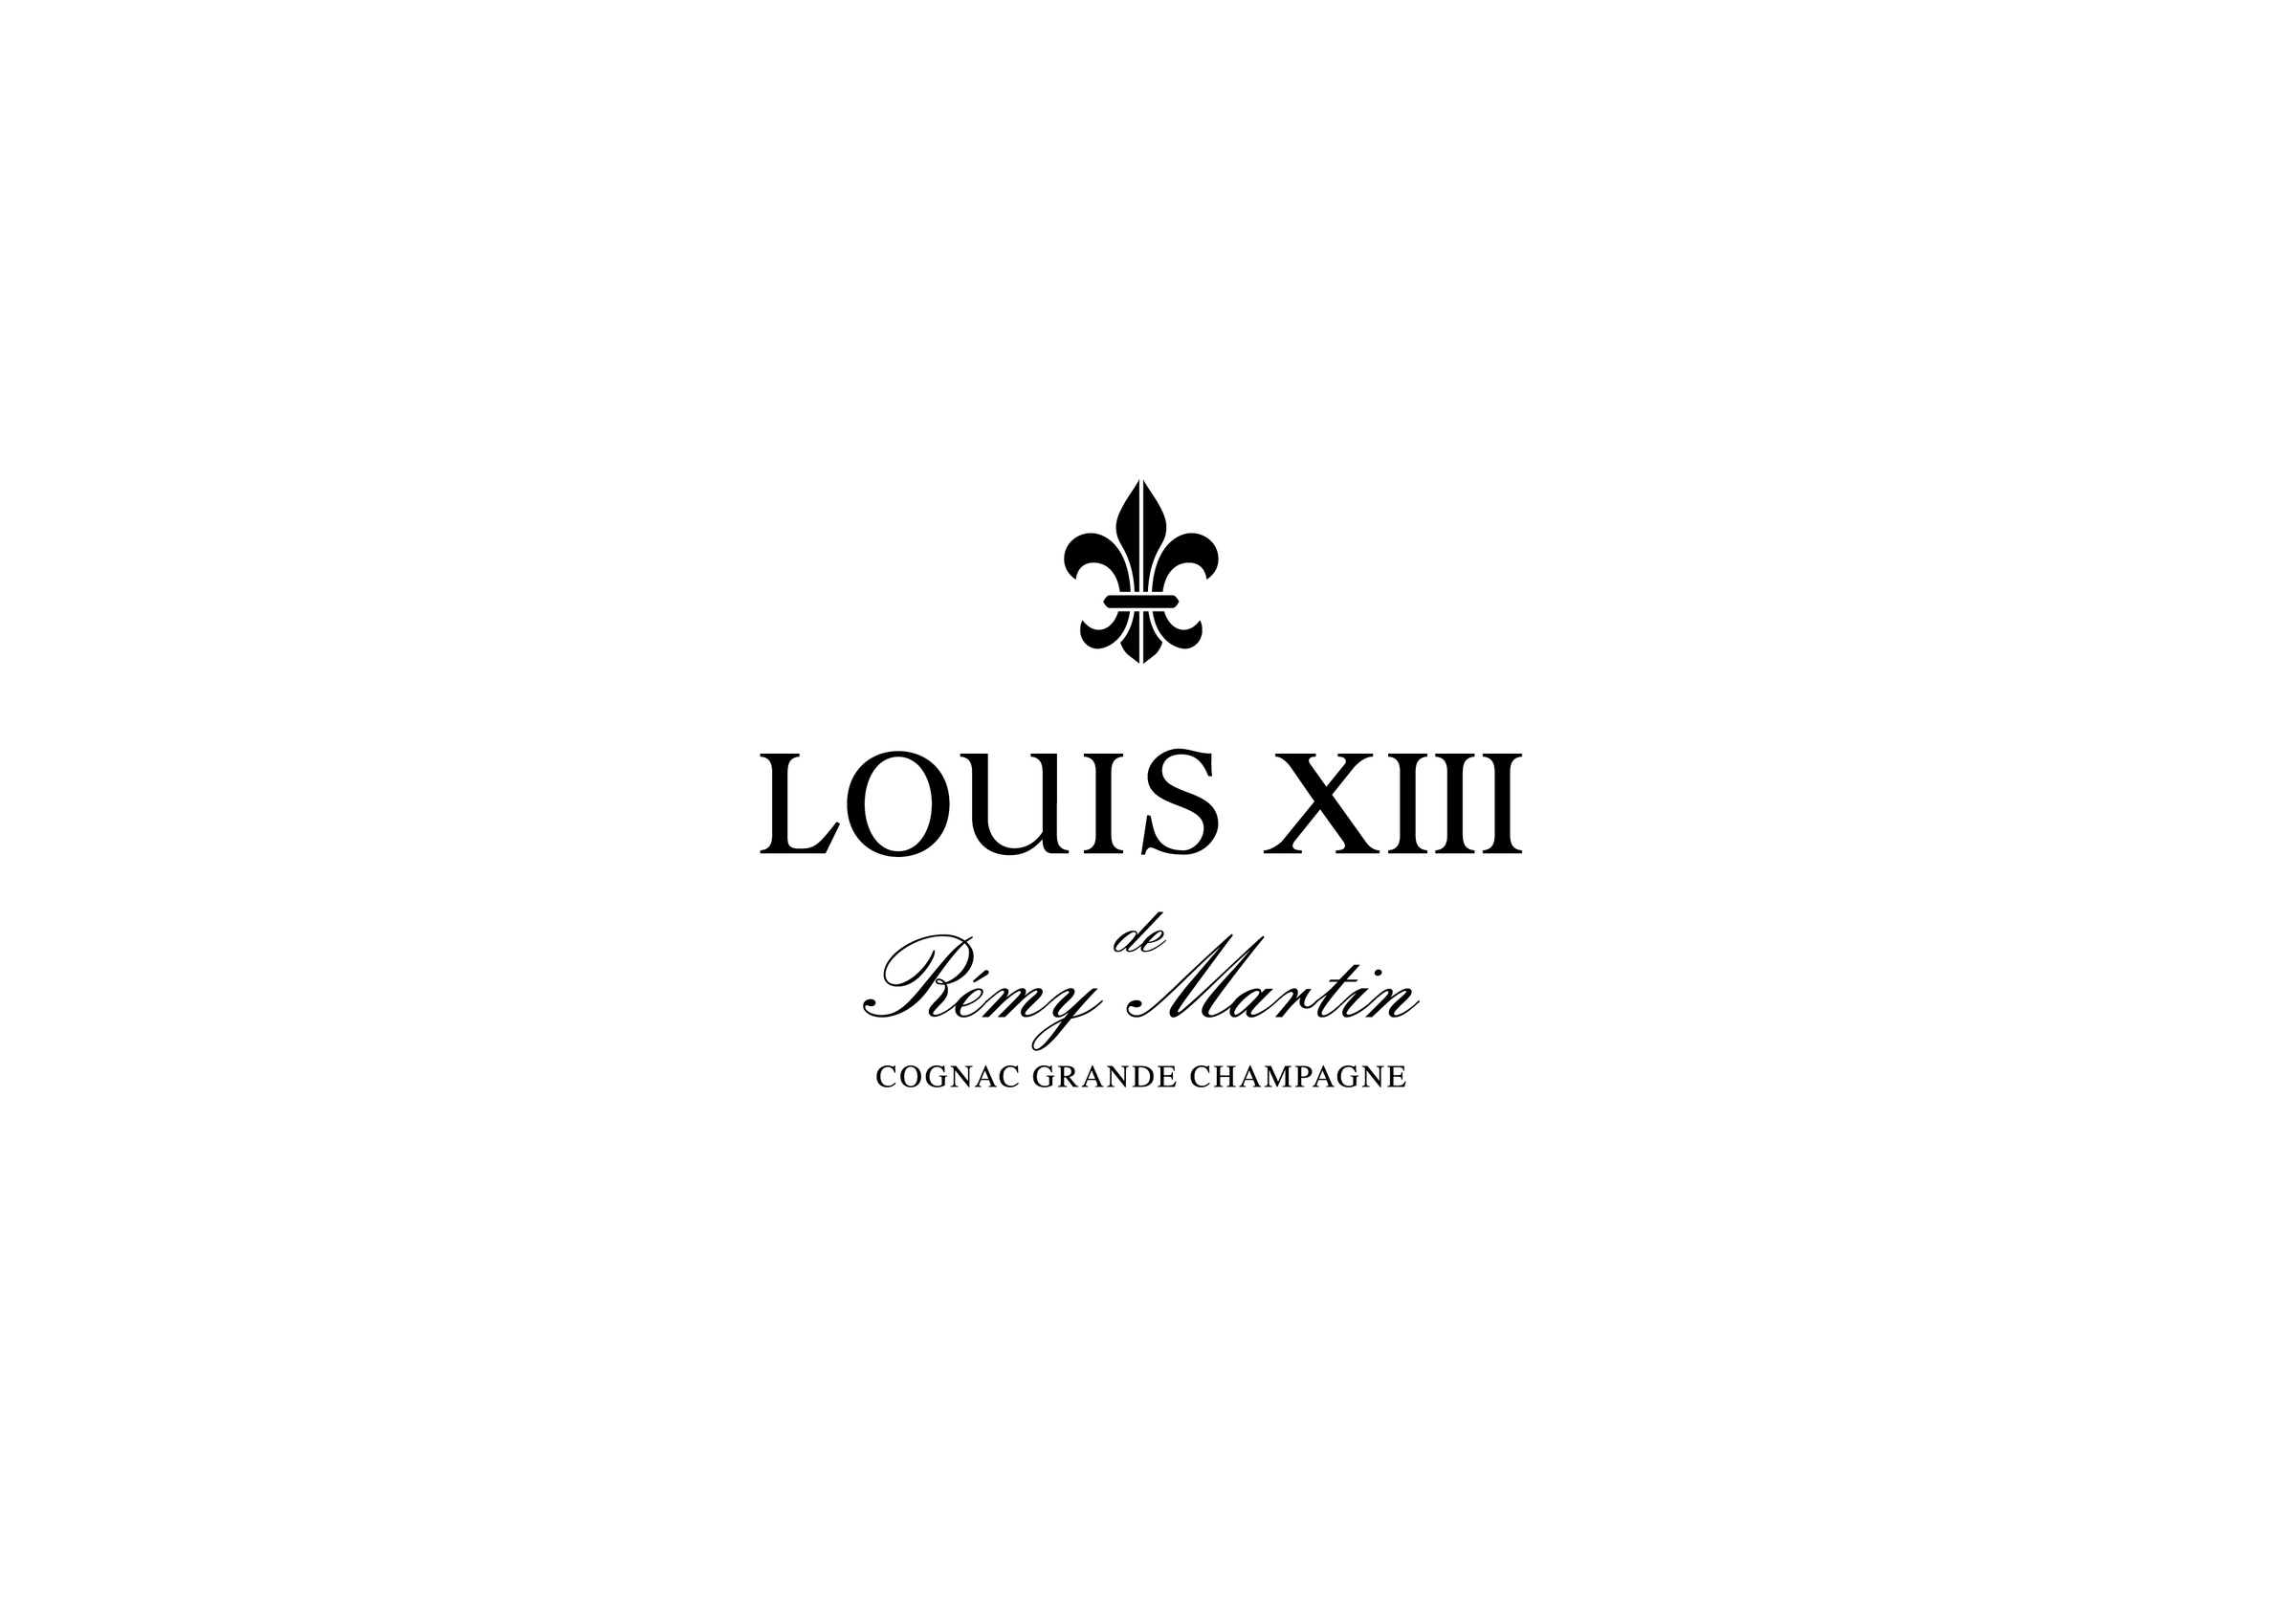 LOUIS XIII